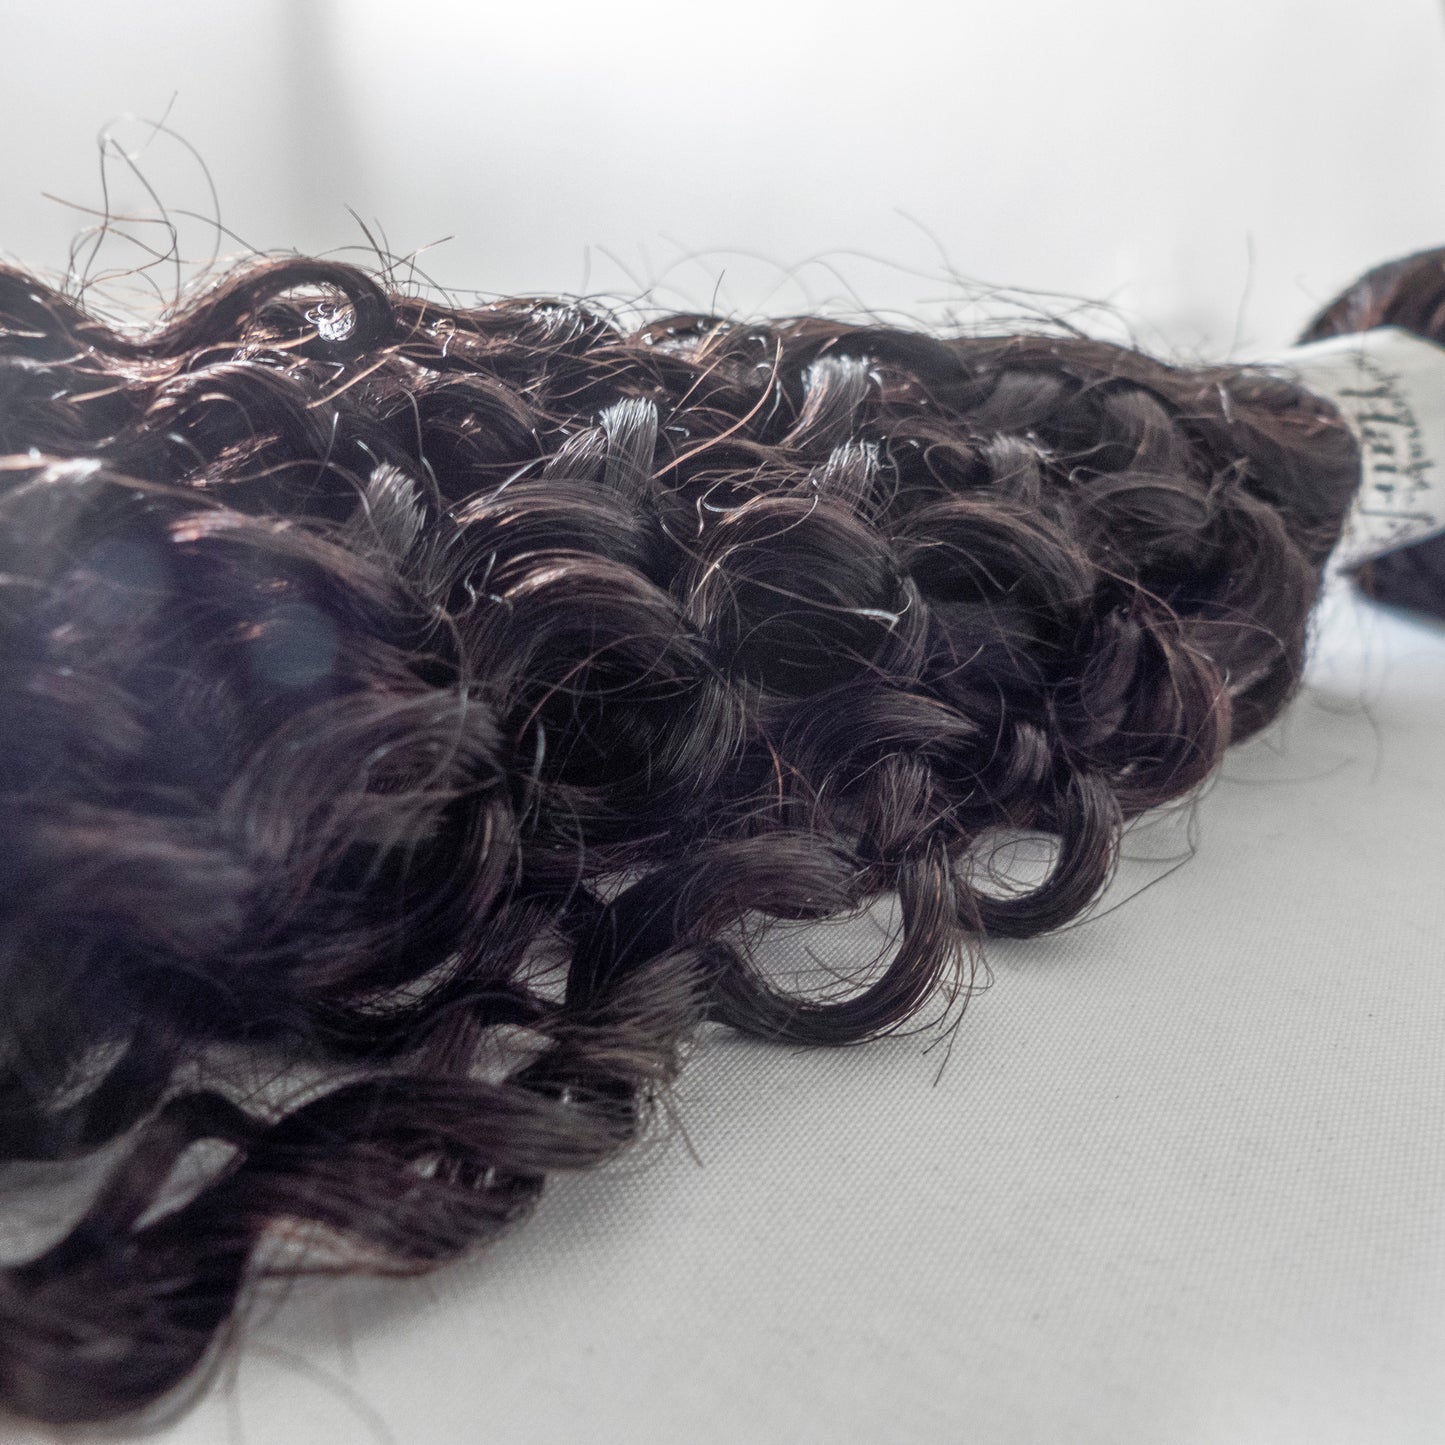 Tissage brésilien Kinky curly 100%human hair couleur naturelle qualité remy